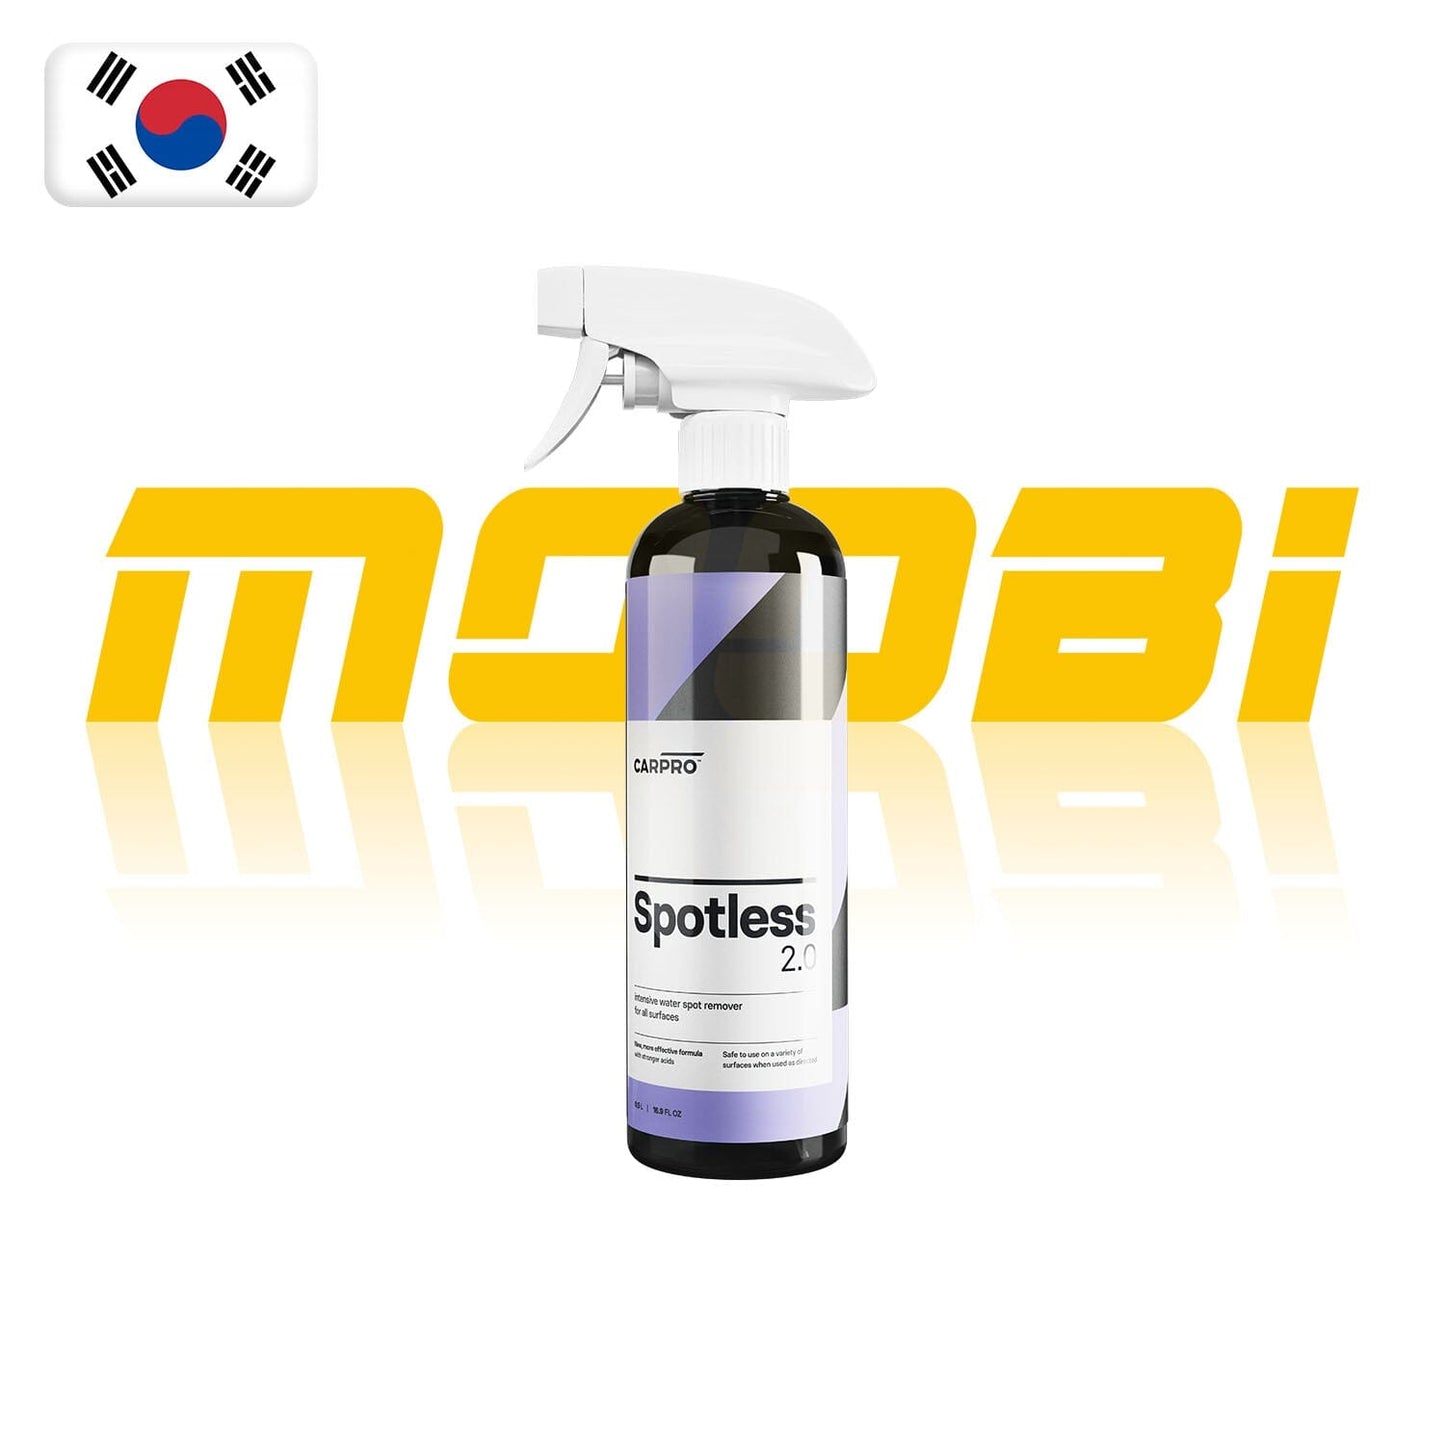 CARPRO | 水印清 Spotless | 韓國製 | MOOBI 香港網上汽車用品專門店 p1